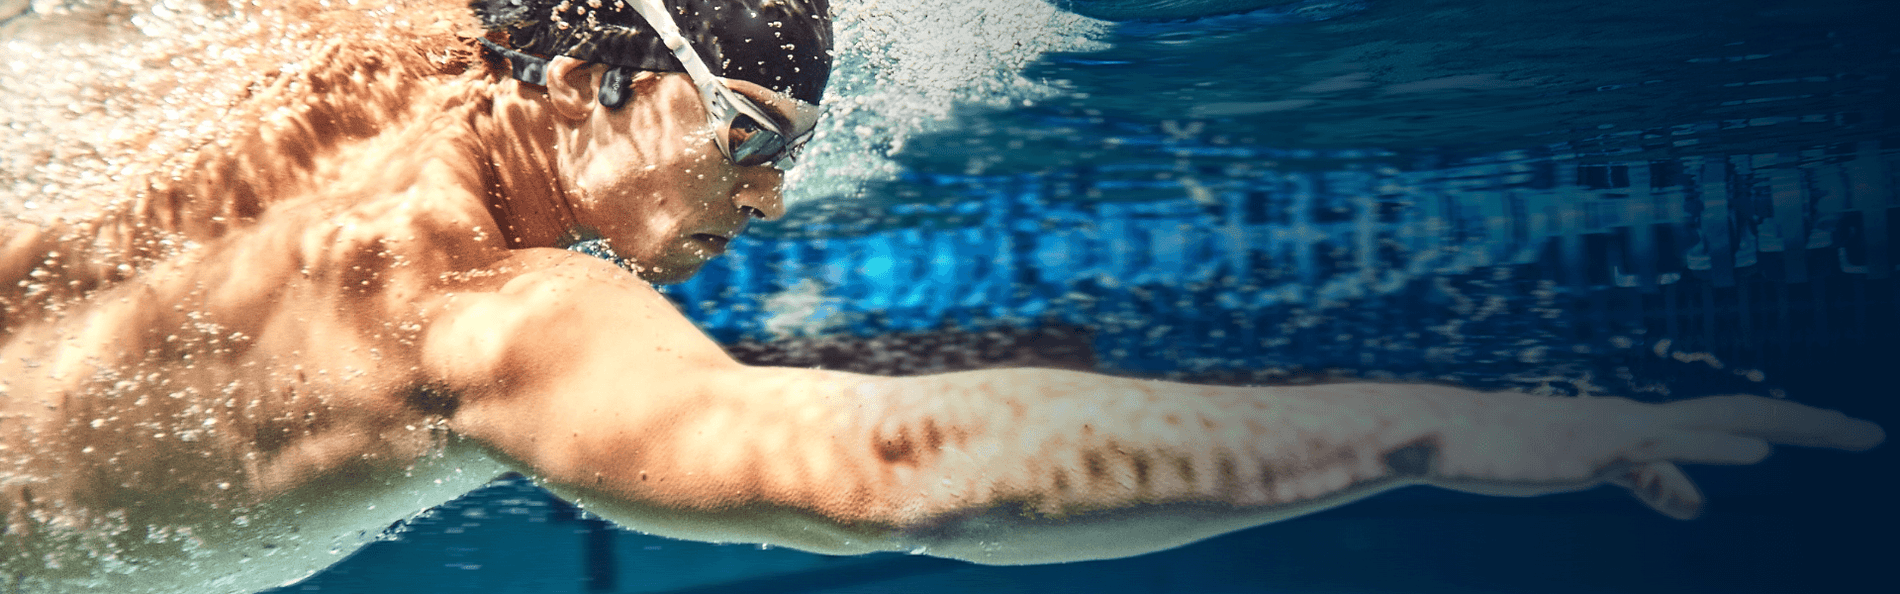 Dirancang Untuk Perenang Direkayasa untuk menahan semua elemen.  OpenSwim sepenuhnya tahan air dan dapat menyelam sehingga Anda dapat berenang, berlari, bersepeda, atau berlatih lebih keras dari sebelumnya.